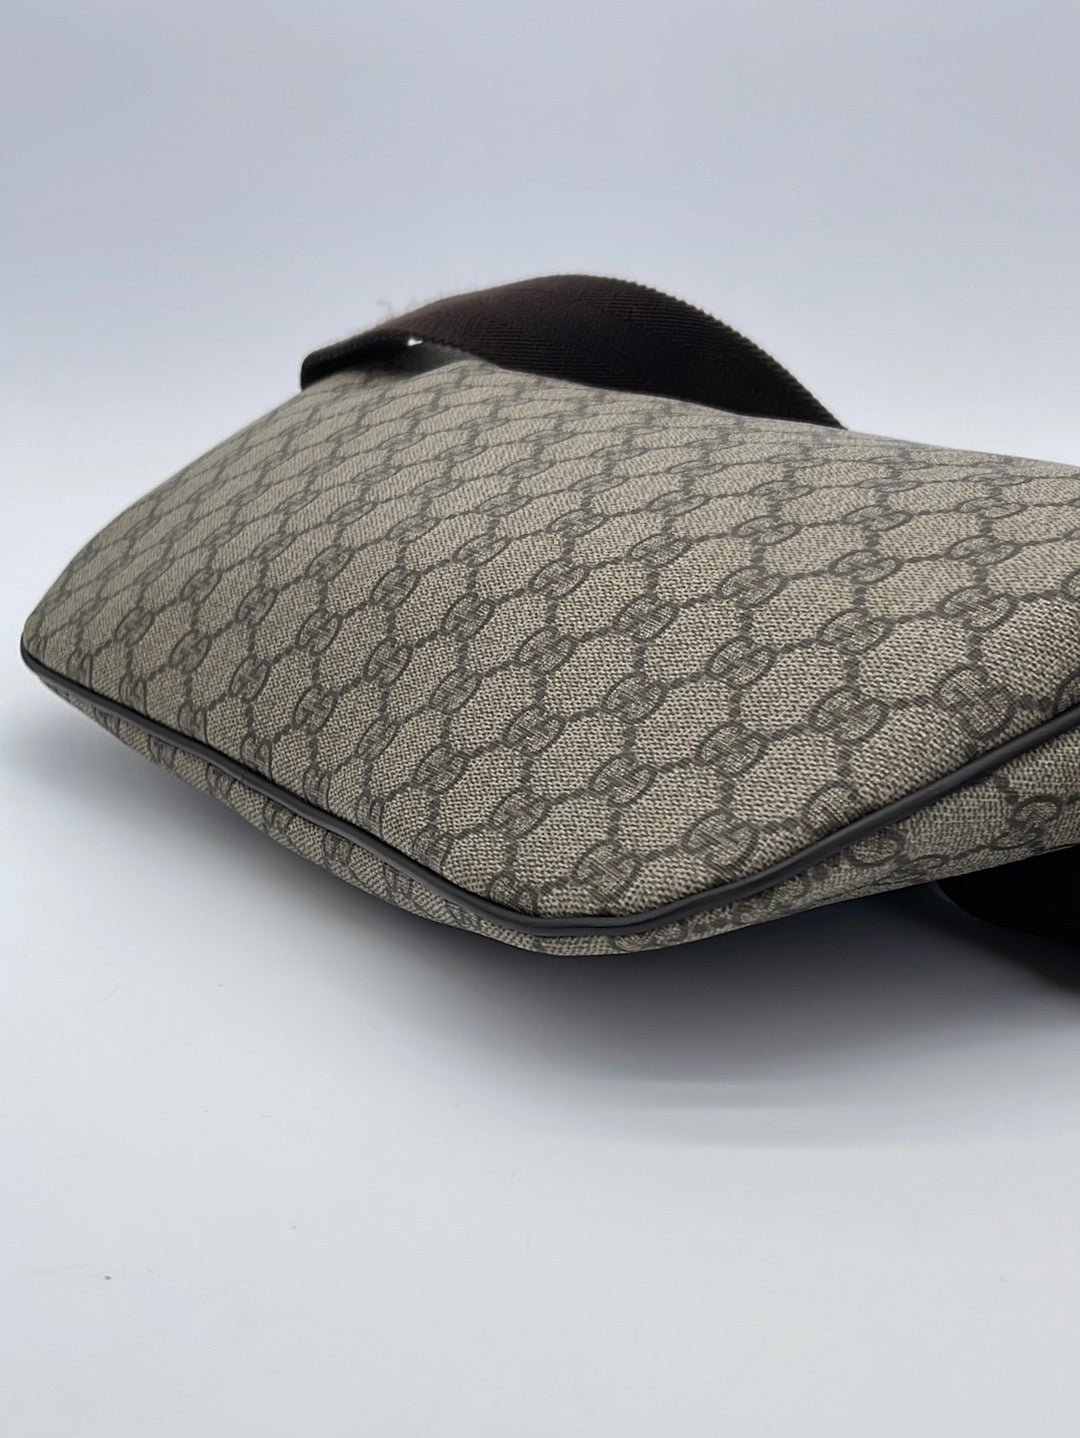 Louis Vuitton - Nano Speedy Crossbody bag - Vintage - Catawiki